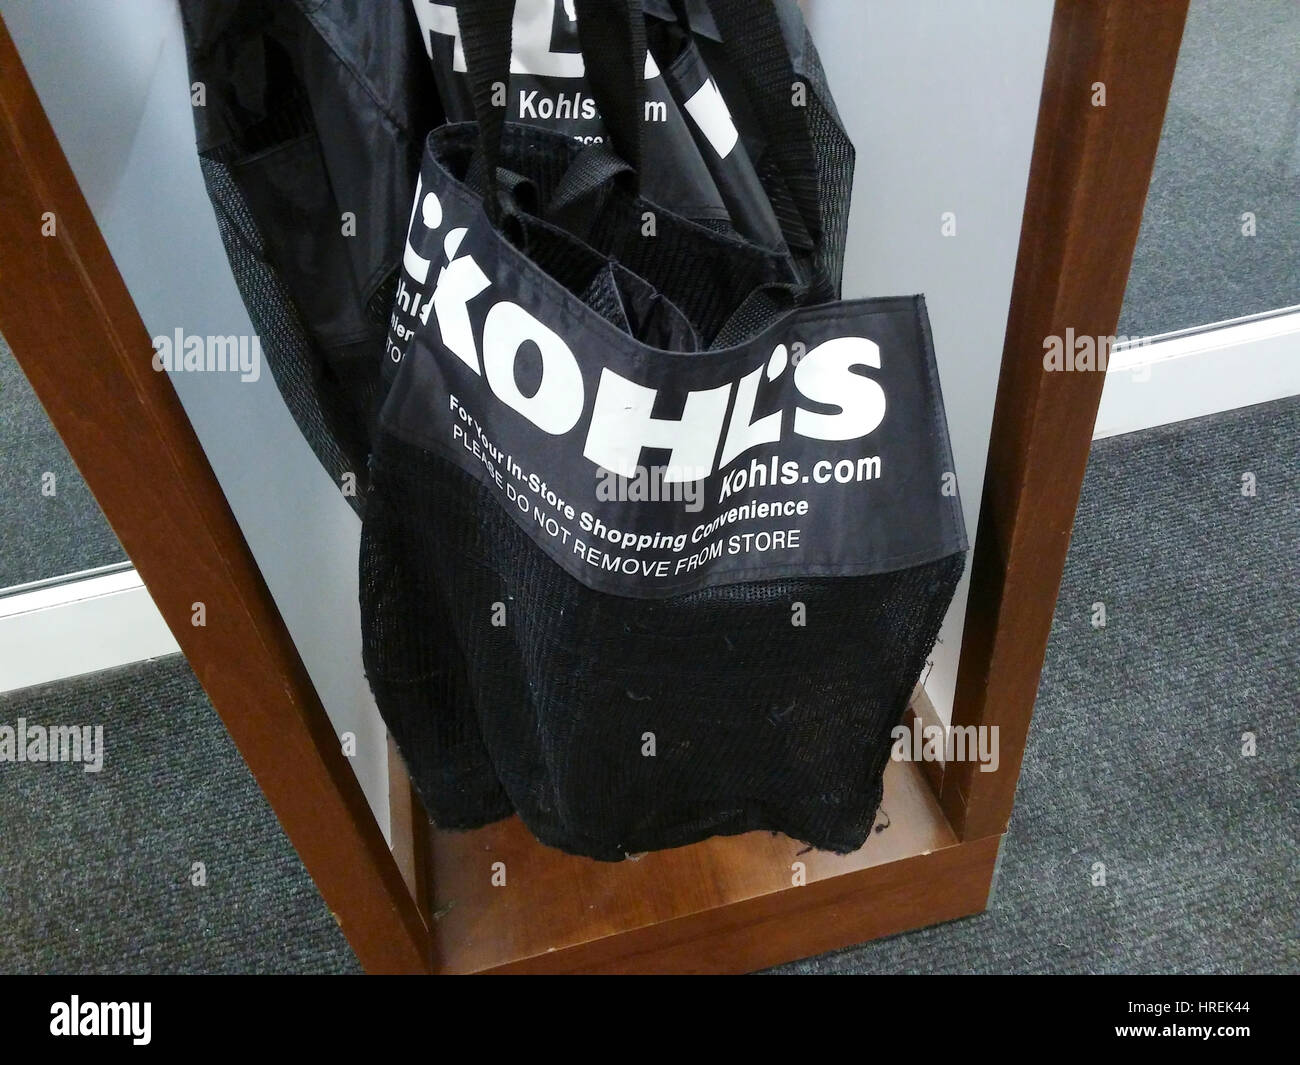 kohls shopping bag